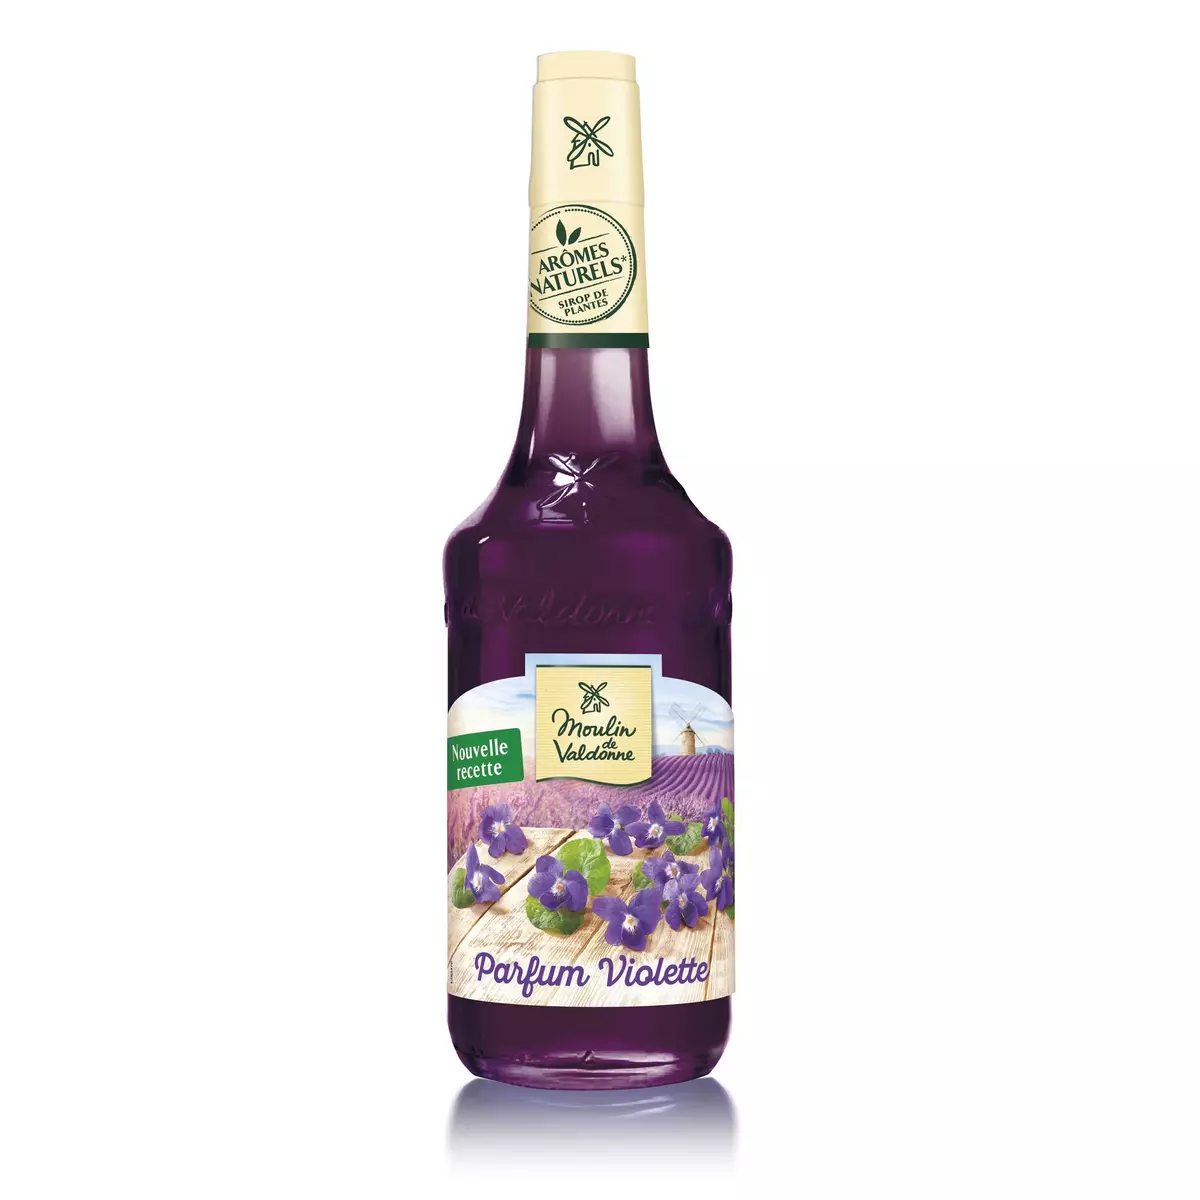 MOULIN DE VALDONNE Sirop de violette bouteille verre 70cl